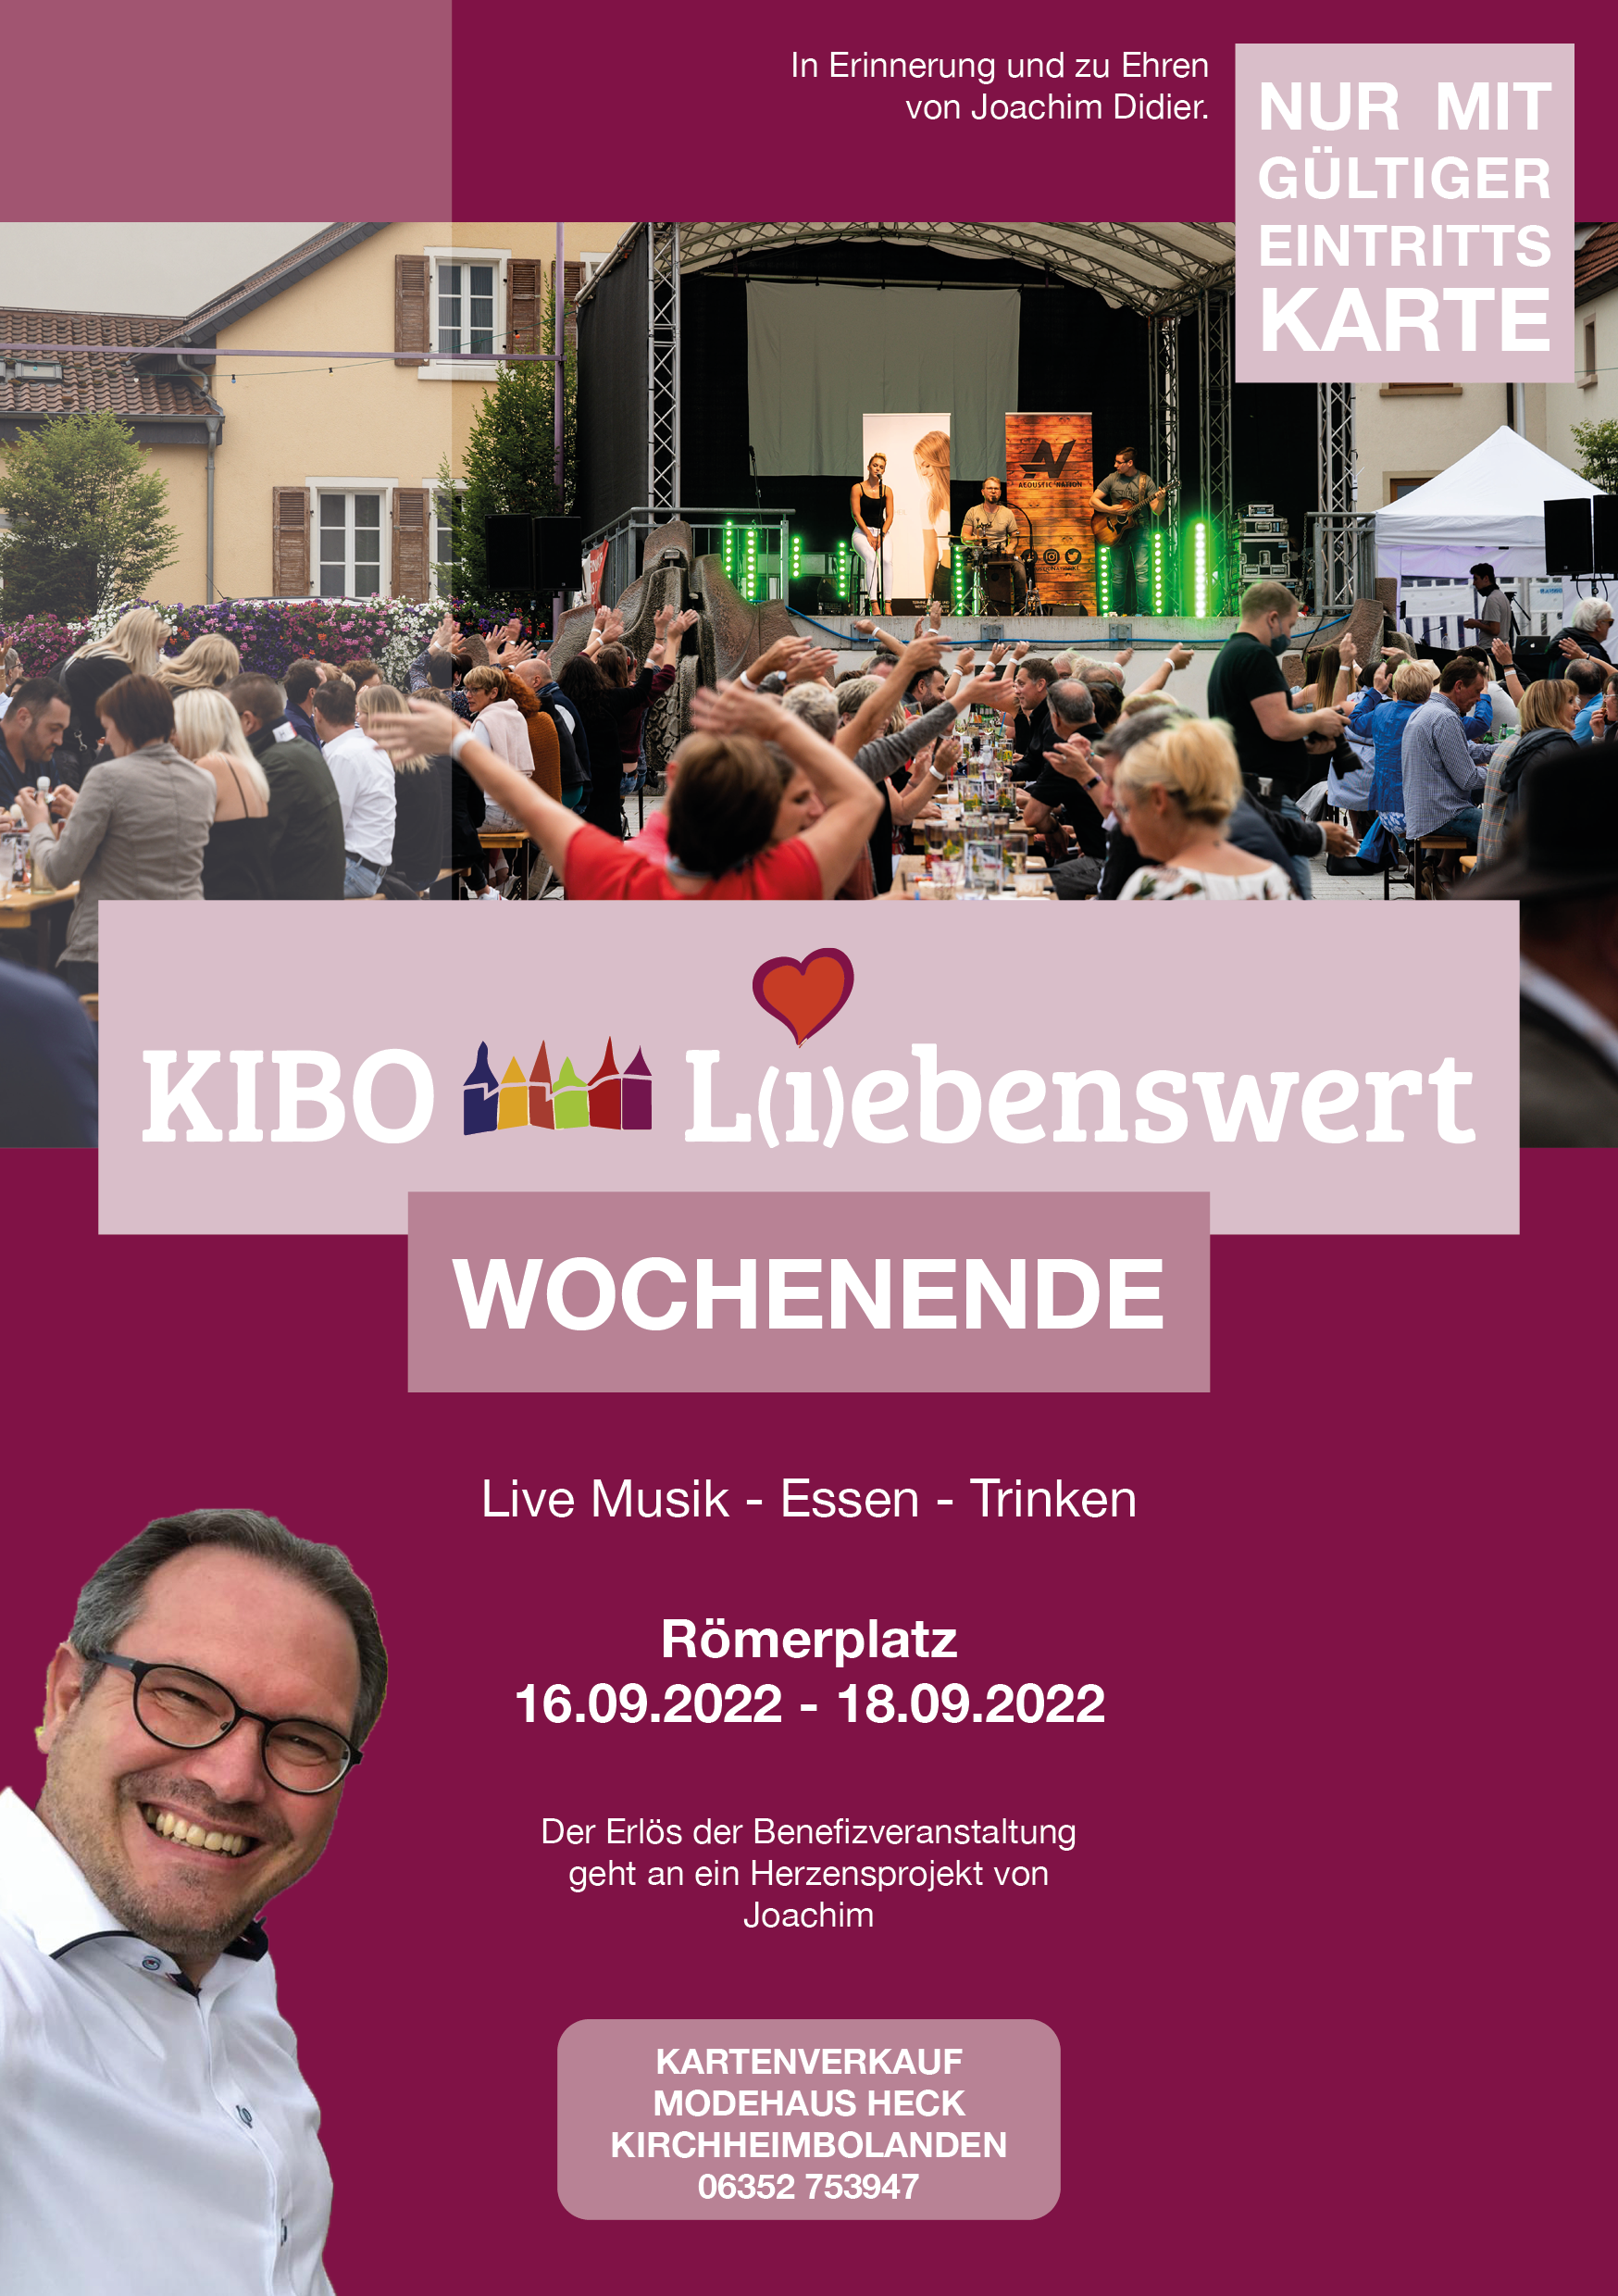 2022-09-16 KIBO-Liebenswert Freitag bis Sonntag in Kirchheimbolanden 3 Tage auf dem Römerplatz unterstützt von proKIBO e.V.